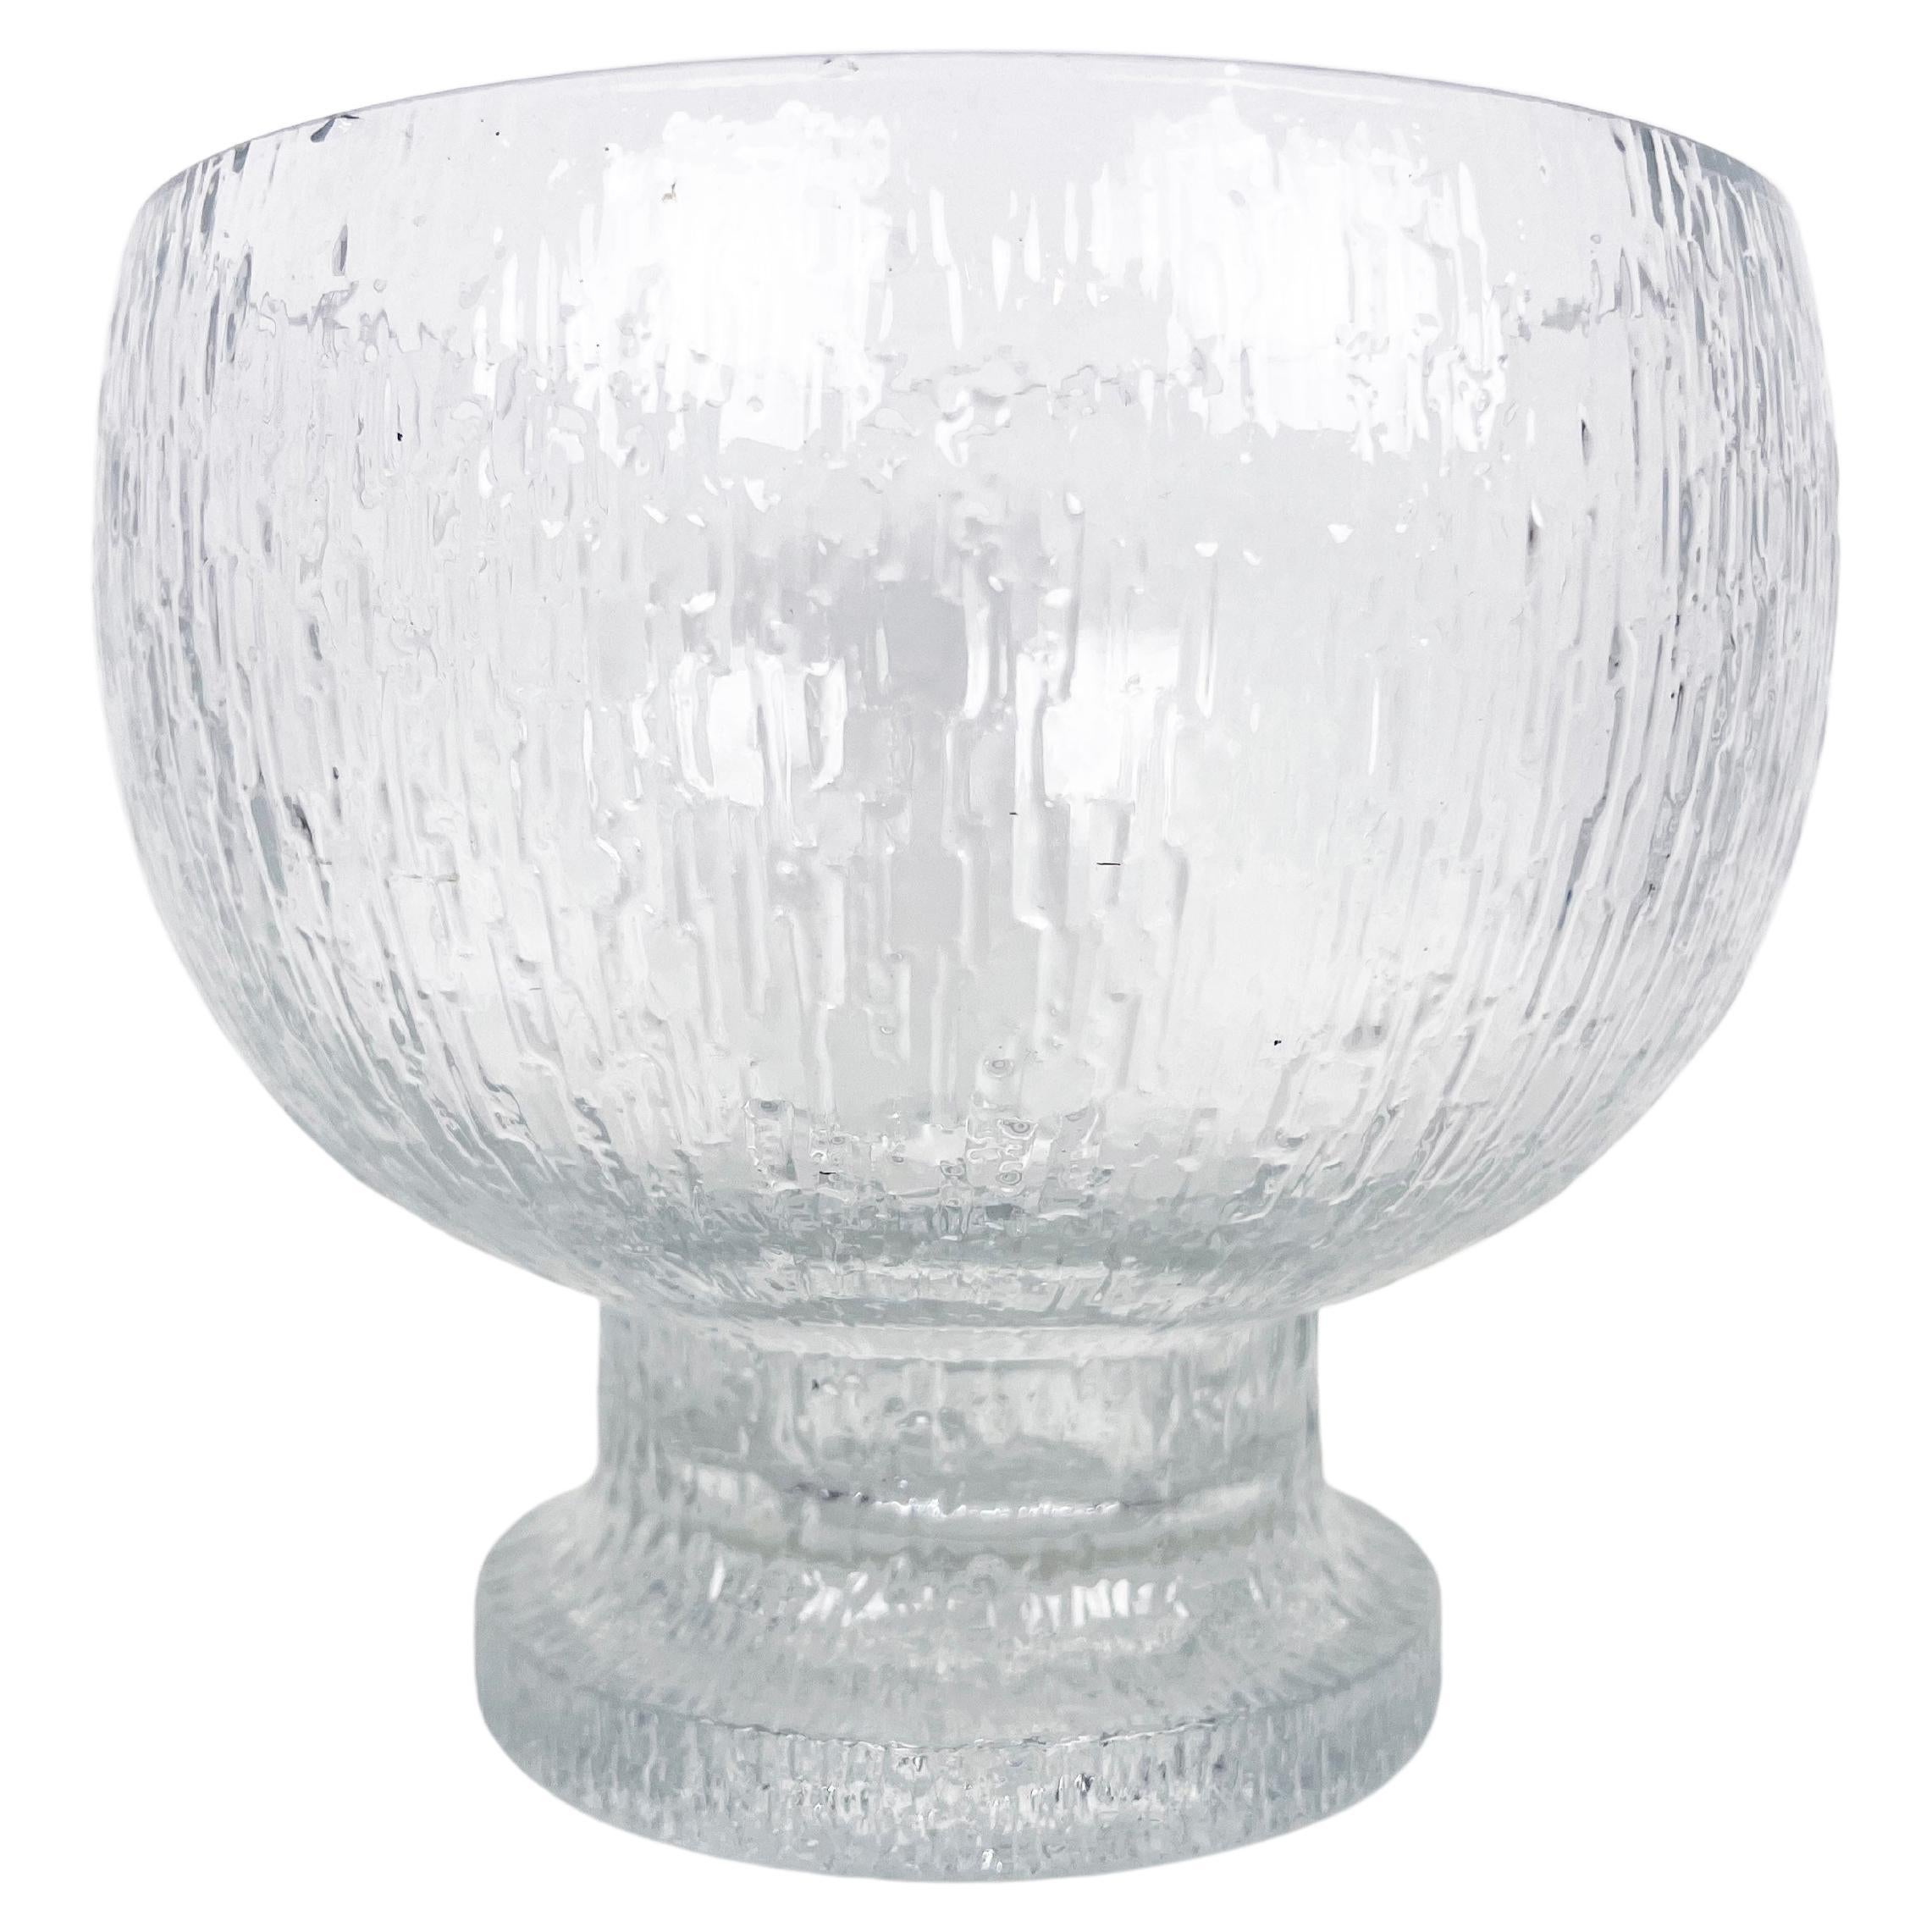 Large Footed Glass "Kekkeri" Bowl by Timo Sarpaneva for Iittala